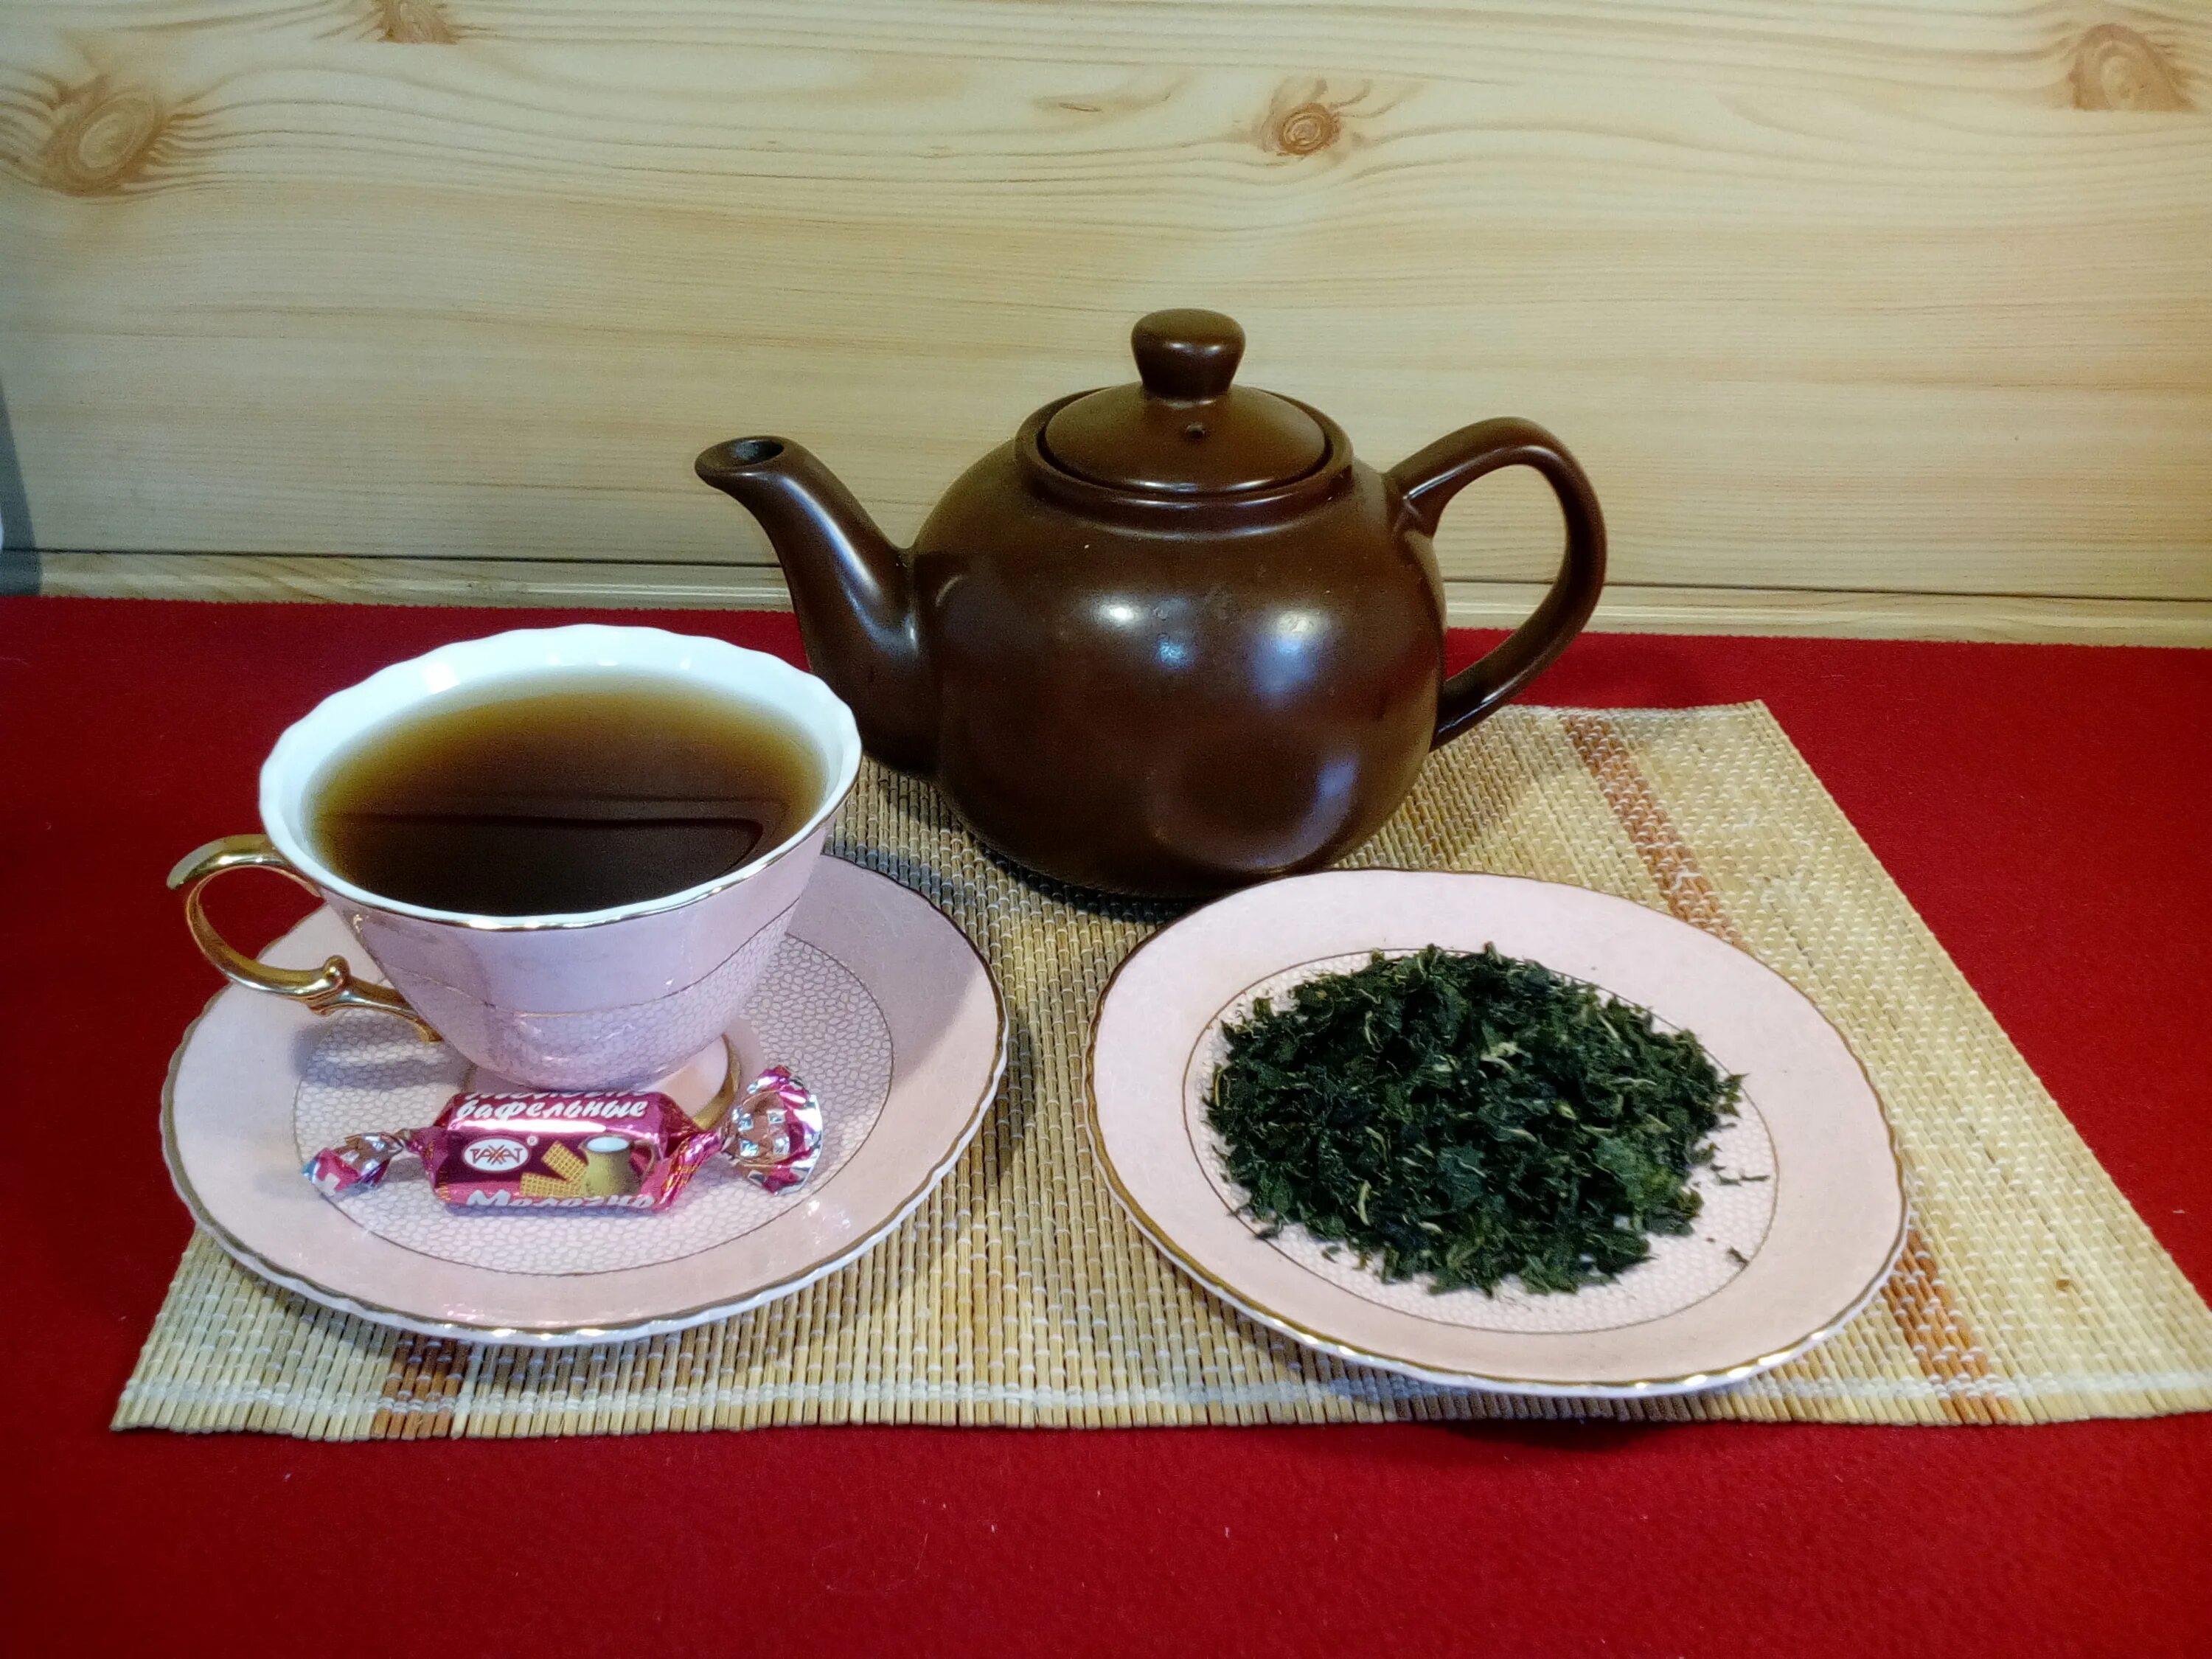 Сибирский чай купить. Сибирский чай. Чай Сибирь. Зеленый чай в Сибири. Чайная в Сибирском стиле.